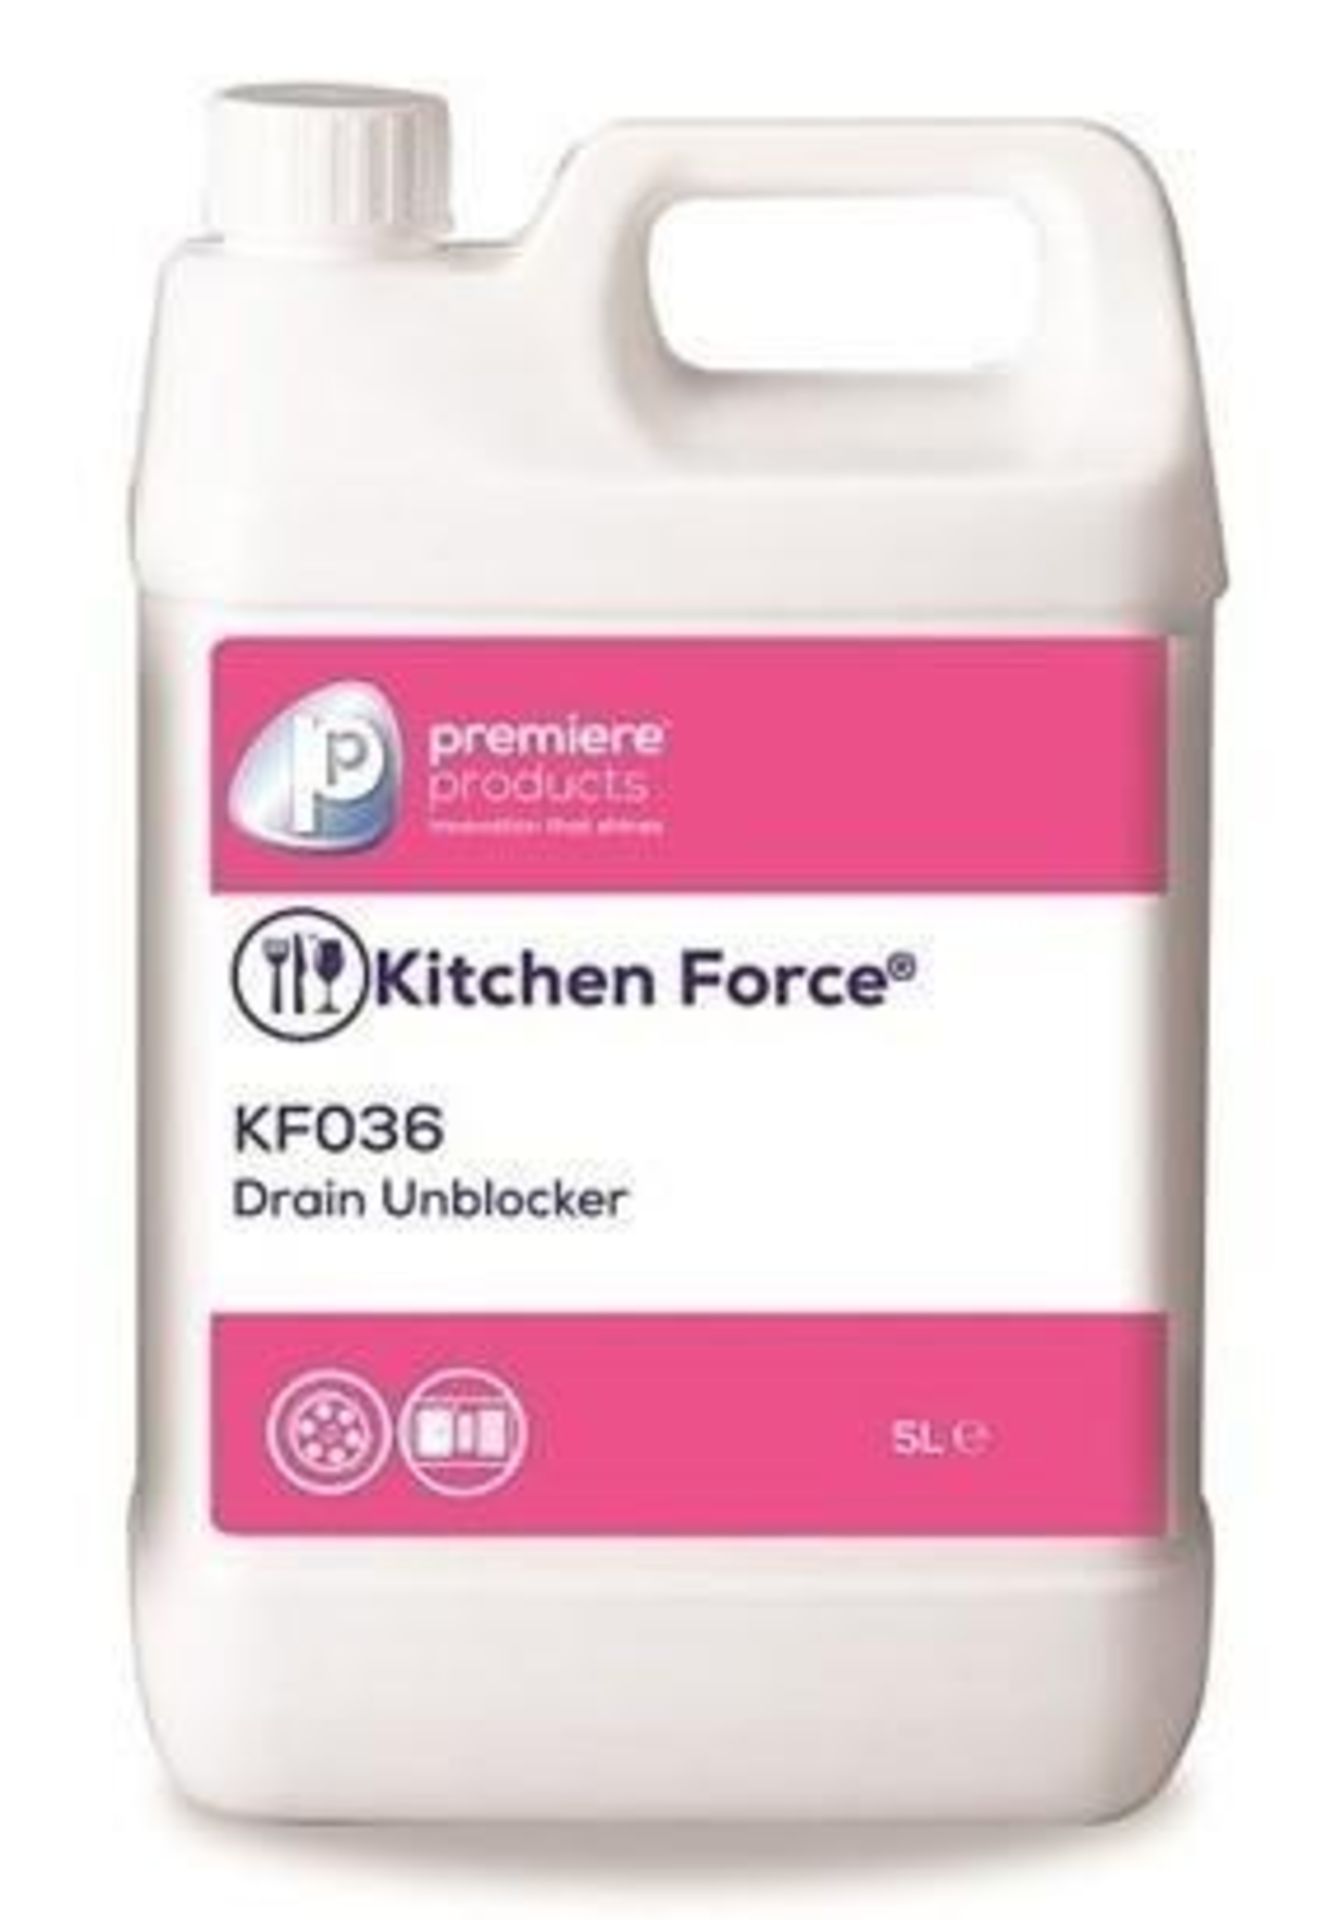 10 x Kitchen Force 5 Litre Drain Unblocker - Premiere Products - Rapidly Breaks Down Blockages Cause